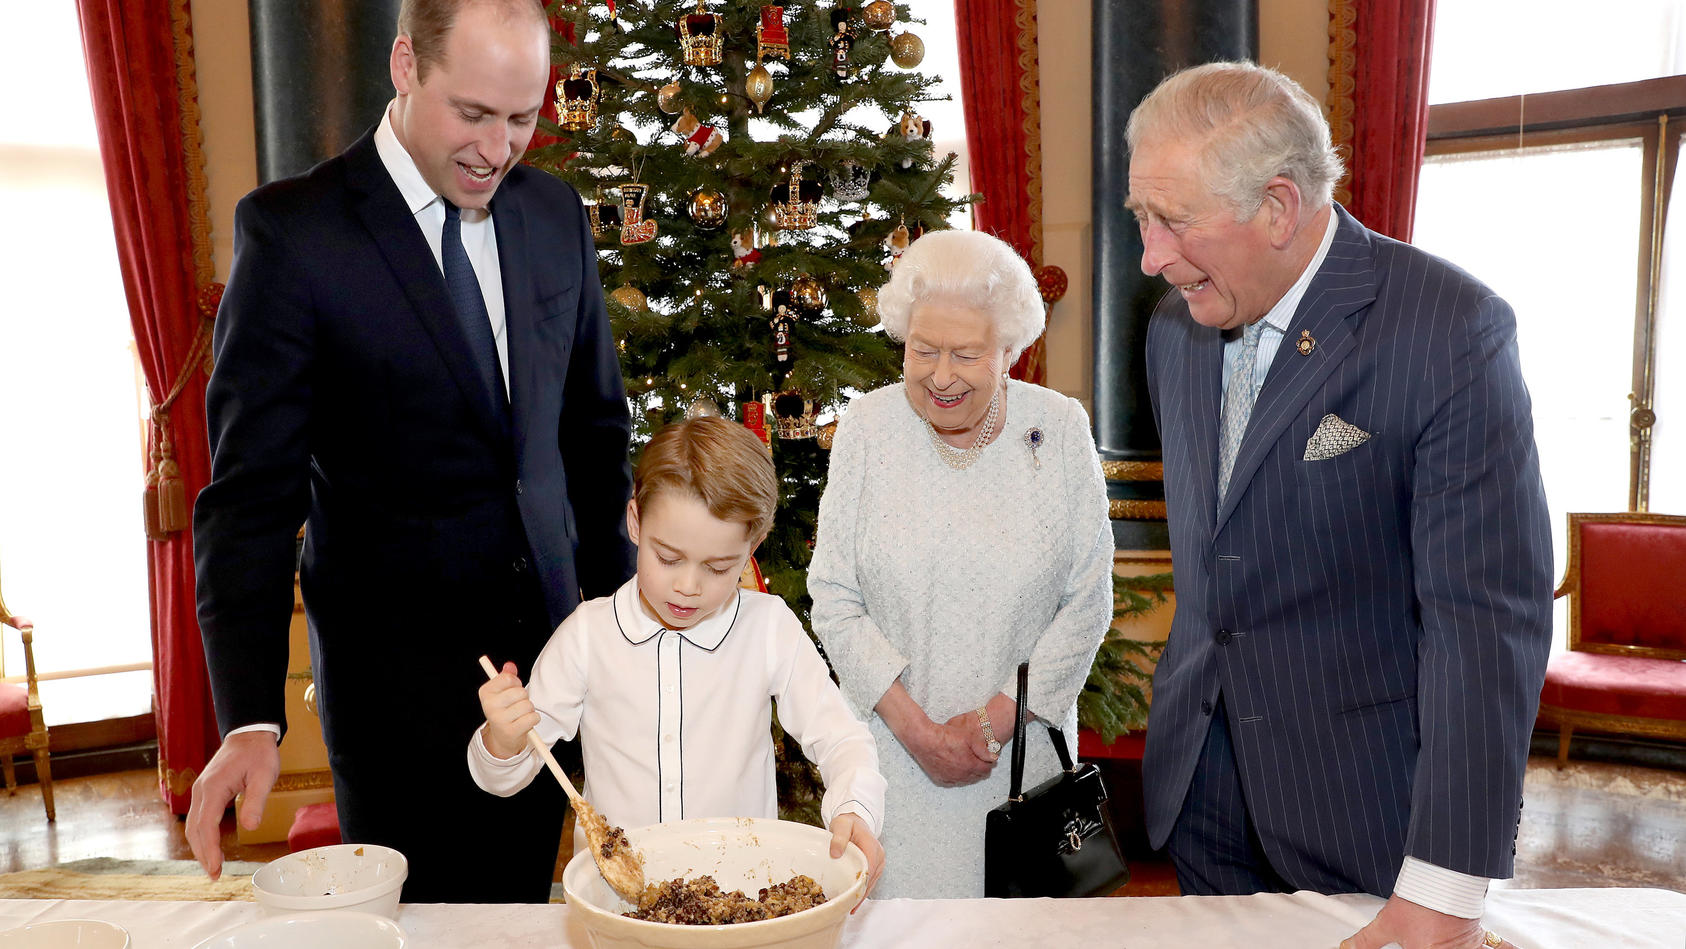 dpatopbilder - HANDOUT - 18.12.2019, Großbritannien, London: Die volle Aufmerksamkeit seines Vaters Prinz William (l), seiner Urgroßmutter Königin Elizabeth II. und seines Großvaters Prinz Charles (r) hat der kleine Prinz George bei der Zubereitung d